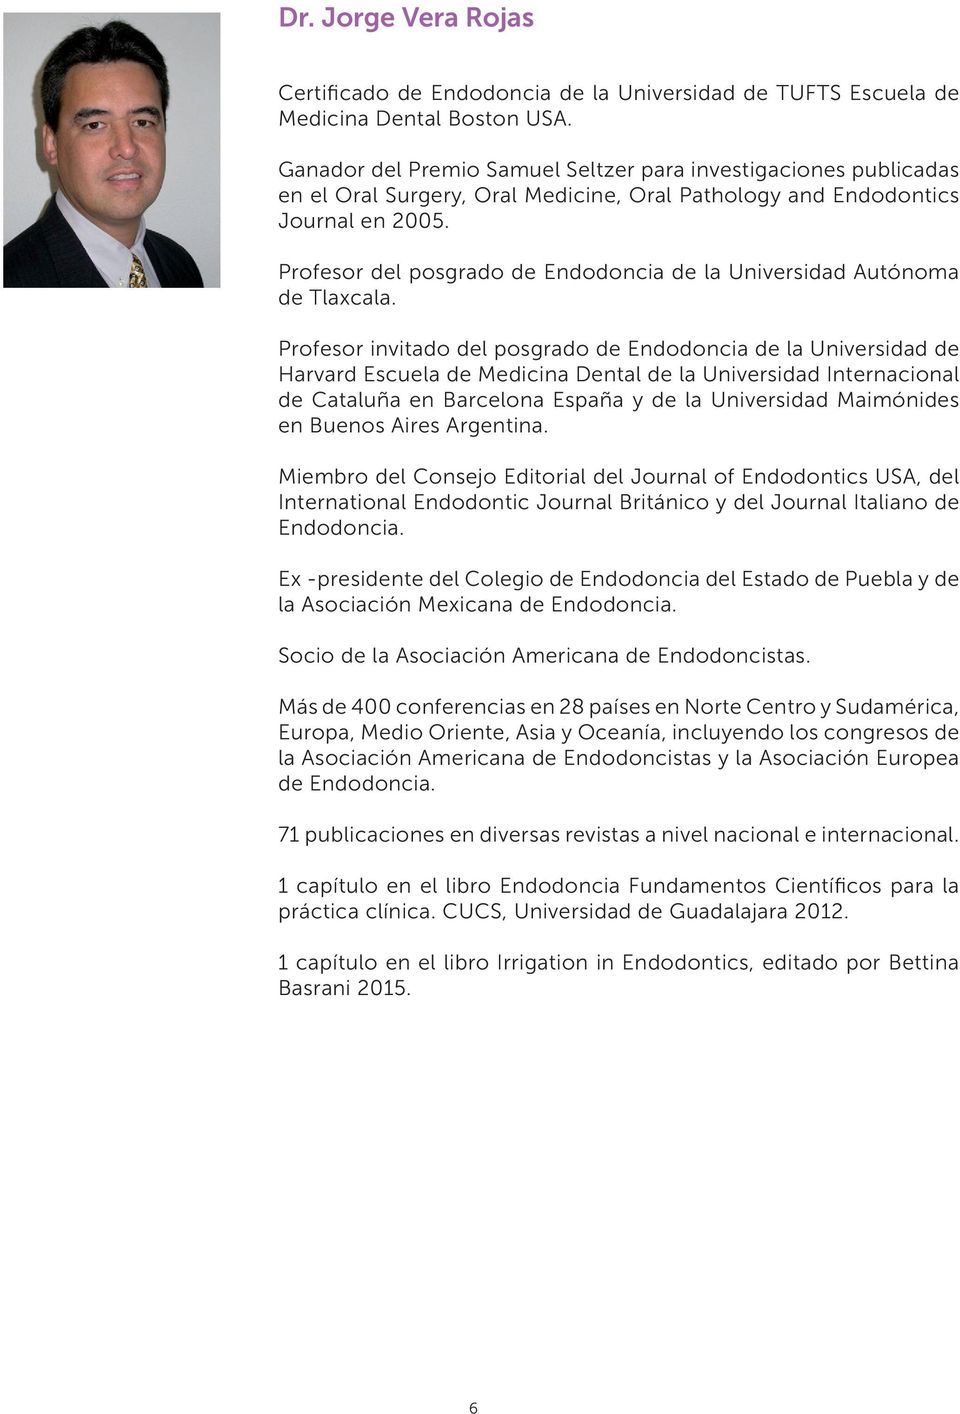 Profesor del posgrado de Endodoncia de la Universidad Autónoma de Tlaxcala.